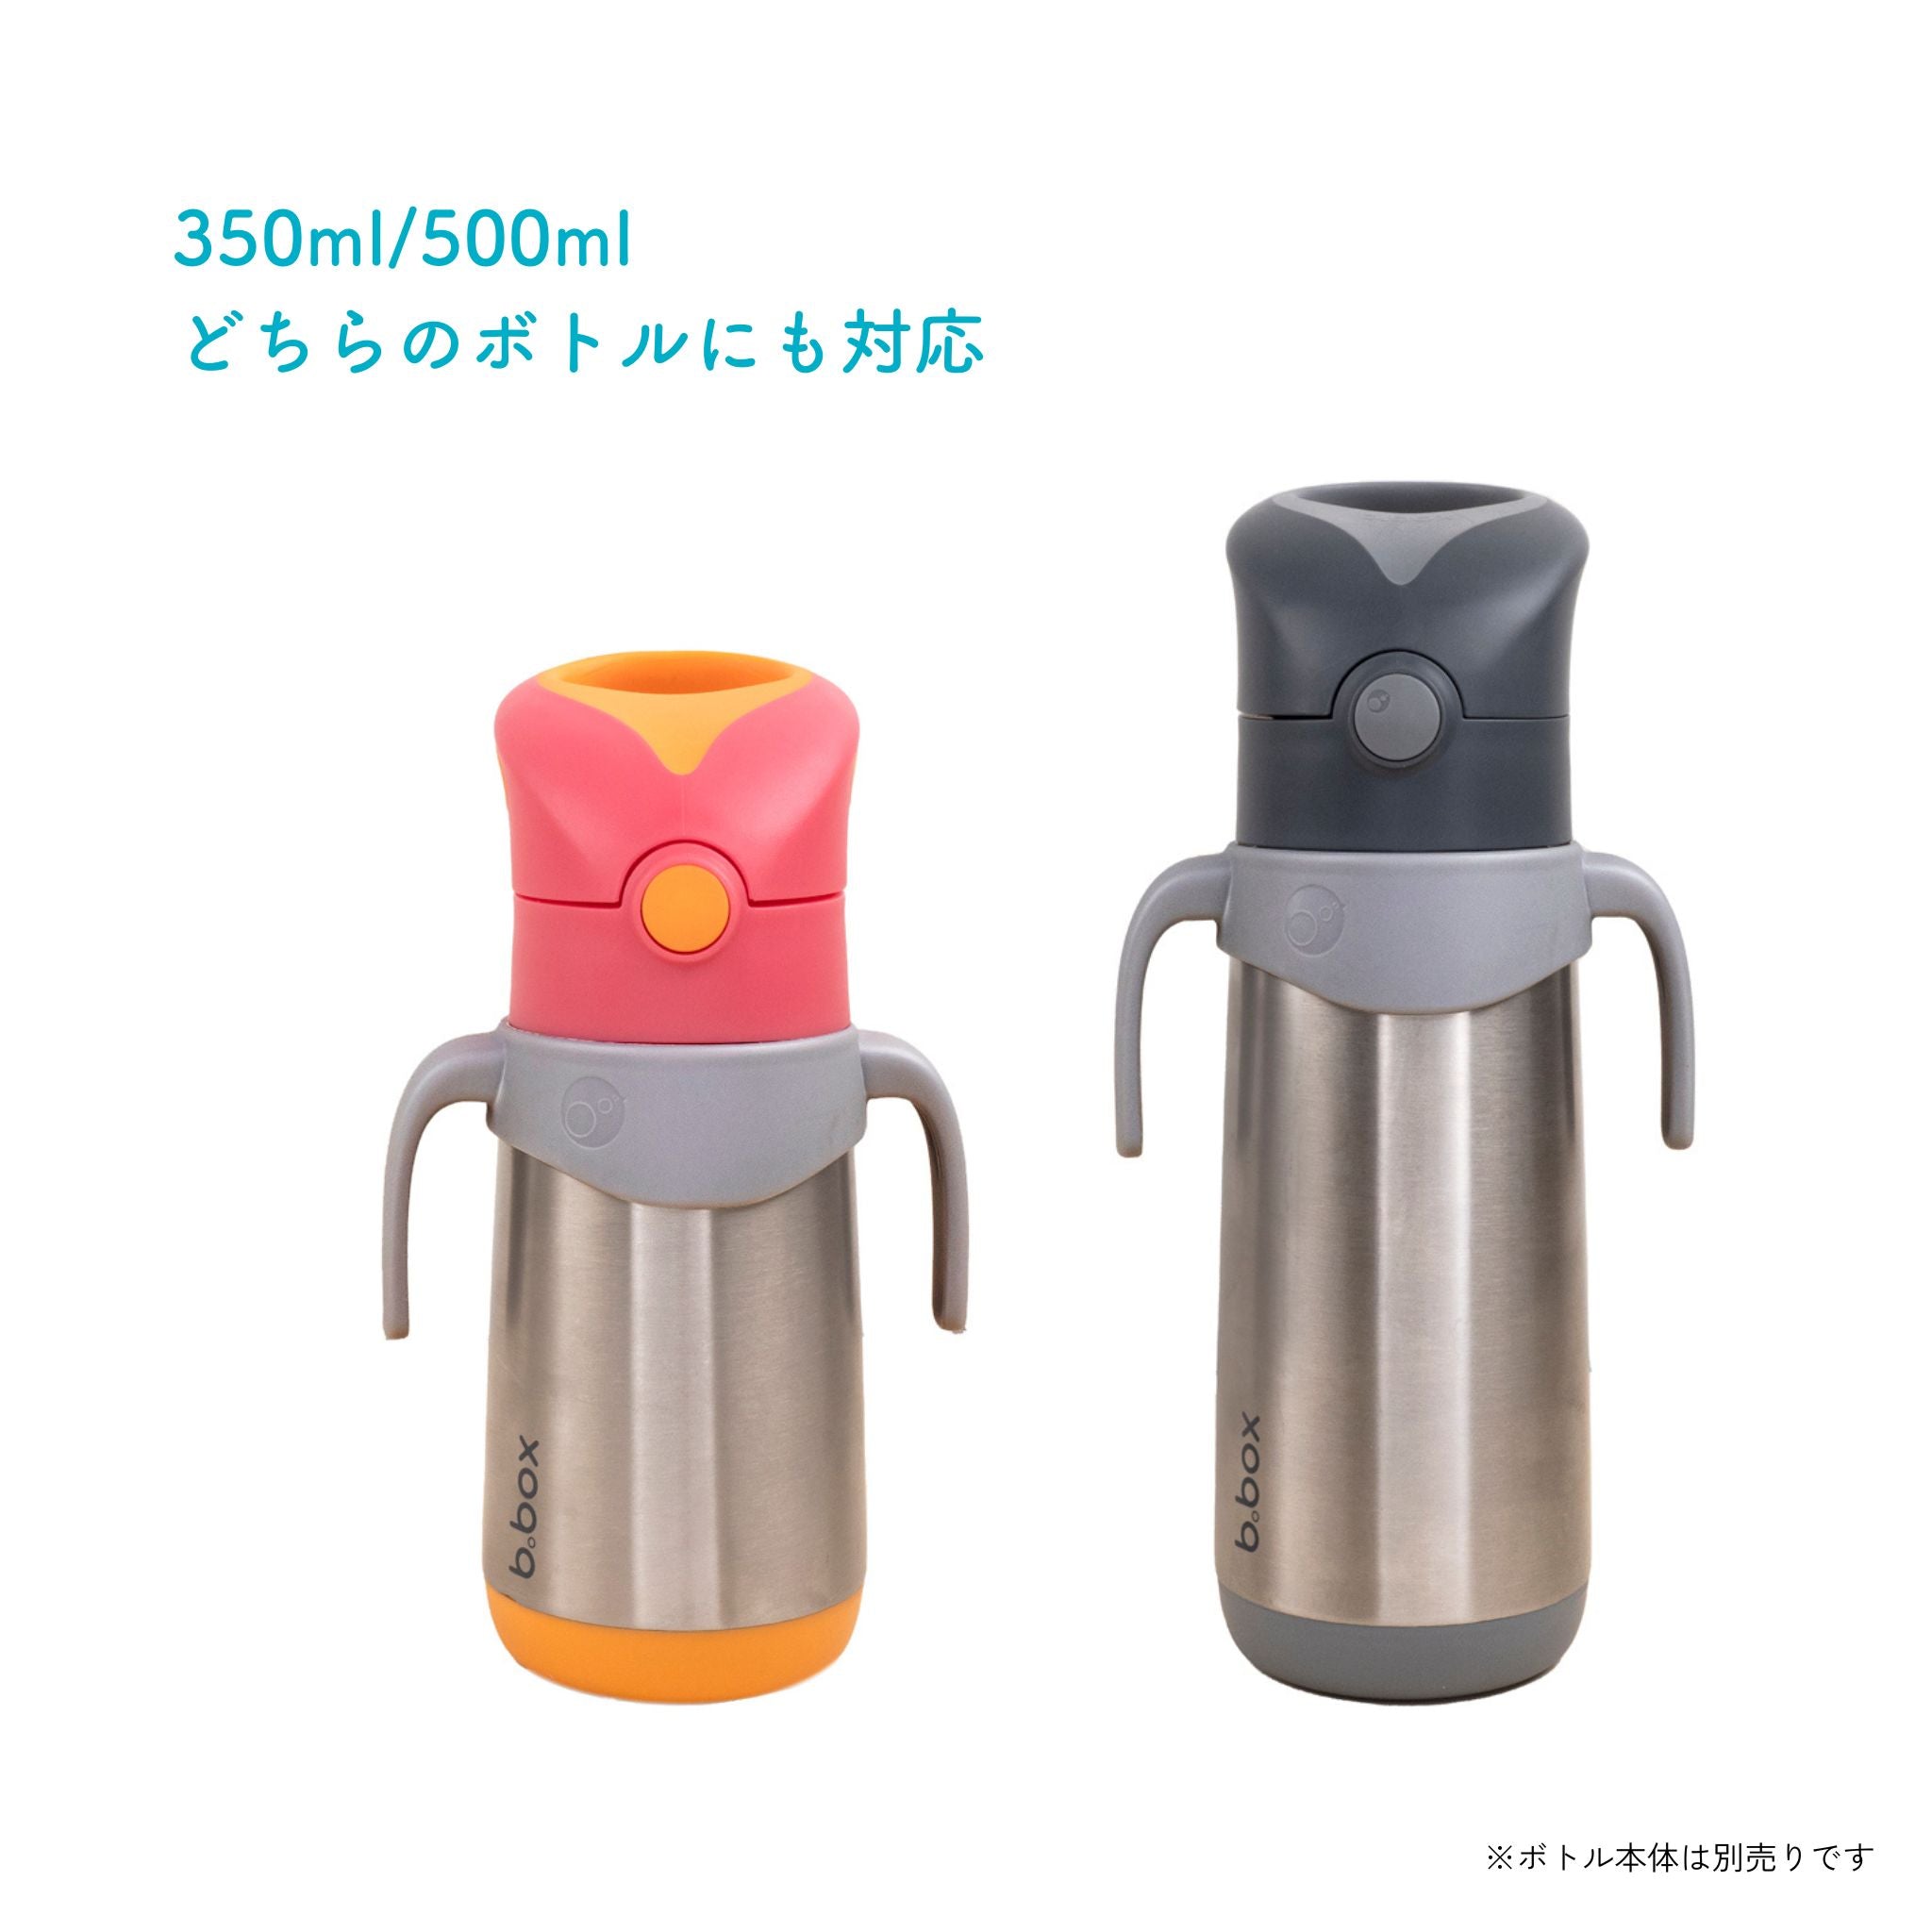 ステンレスボトル専用ハンドル/Insulated drink bottle handles - grey 